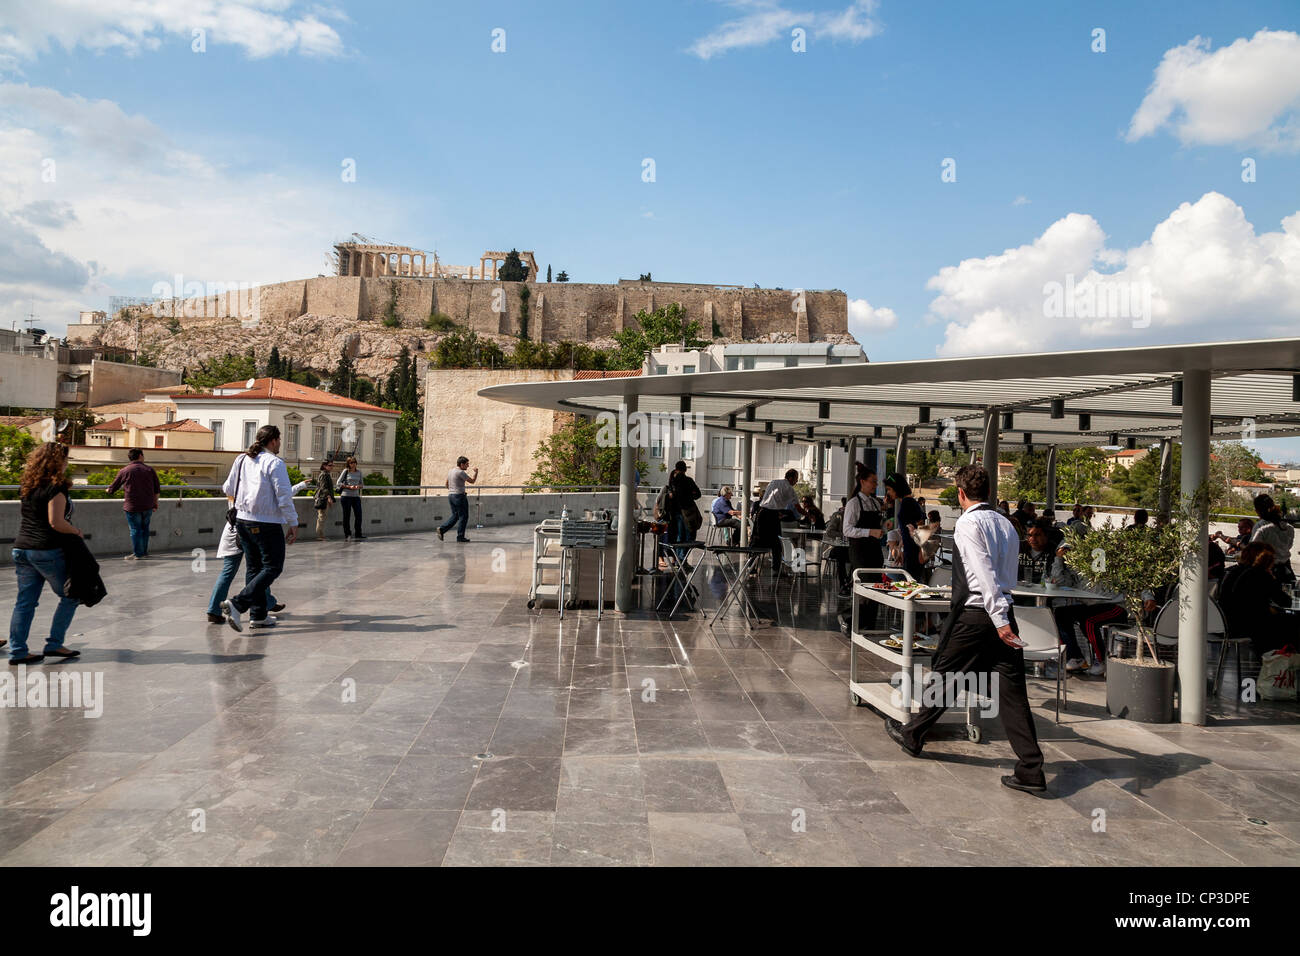 Le Musée de l'Acropole, café et restaurant avec une vue imprenable sur l'acropole d'Athènes. La Grèce. Banque D'Images